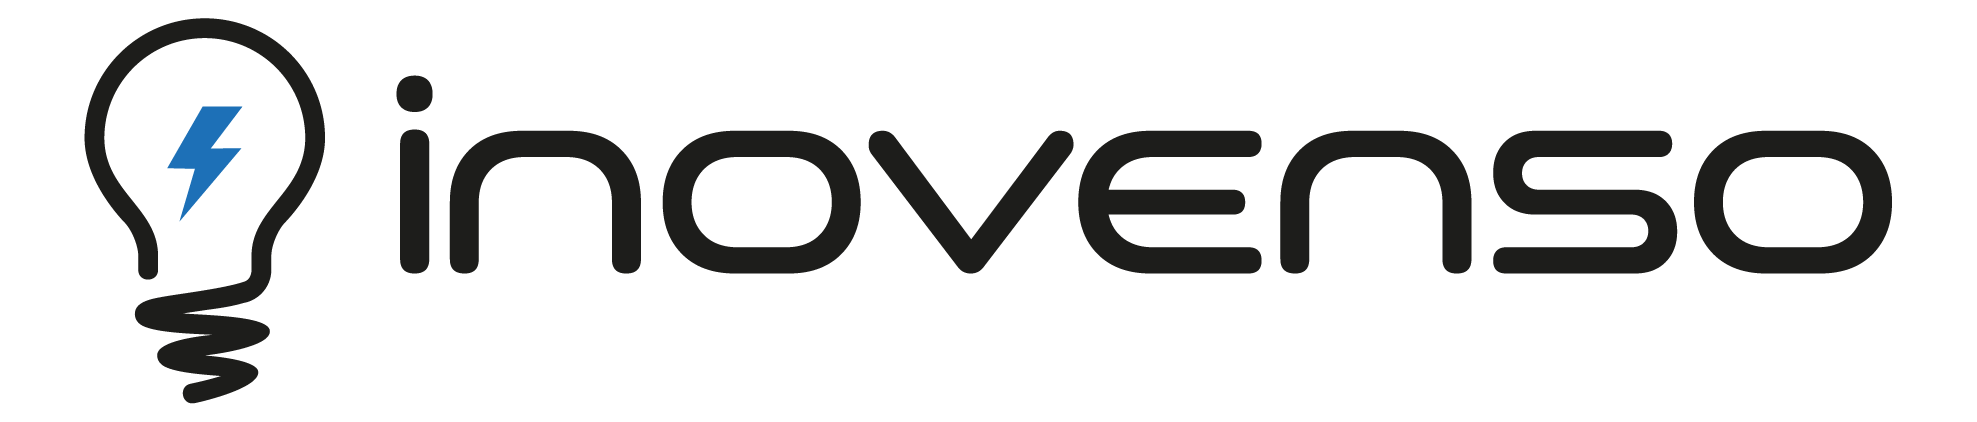 Inovenso Logo